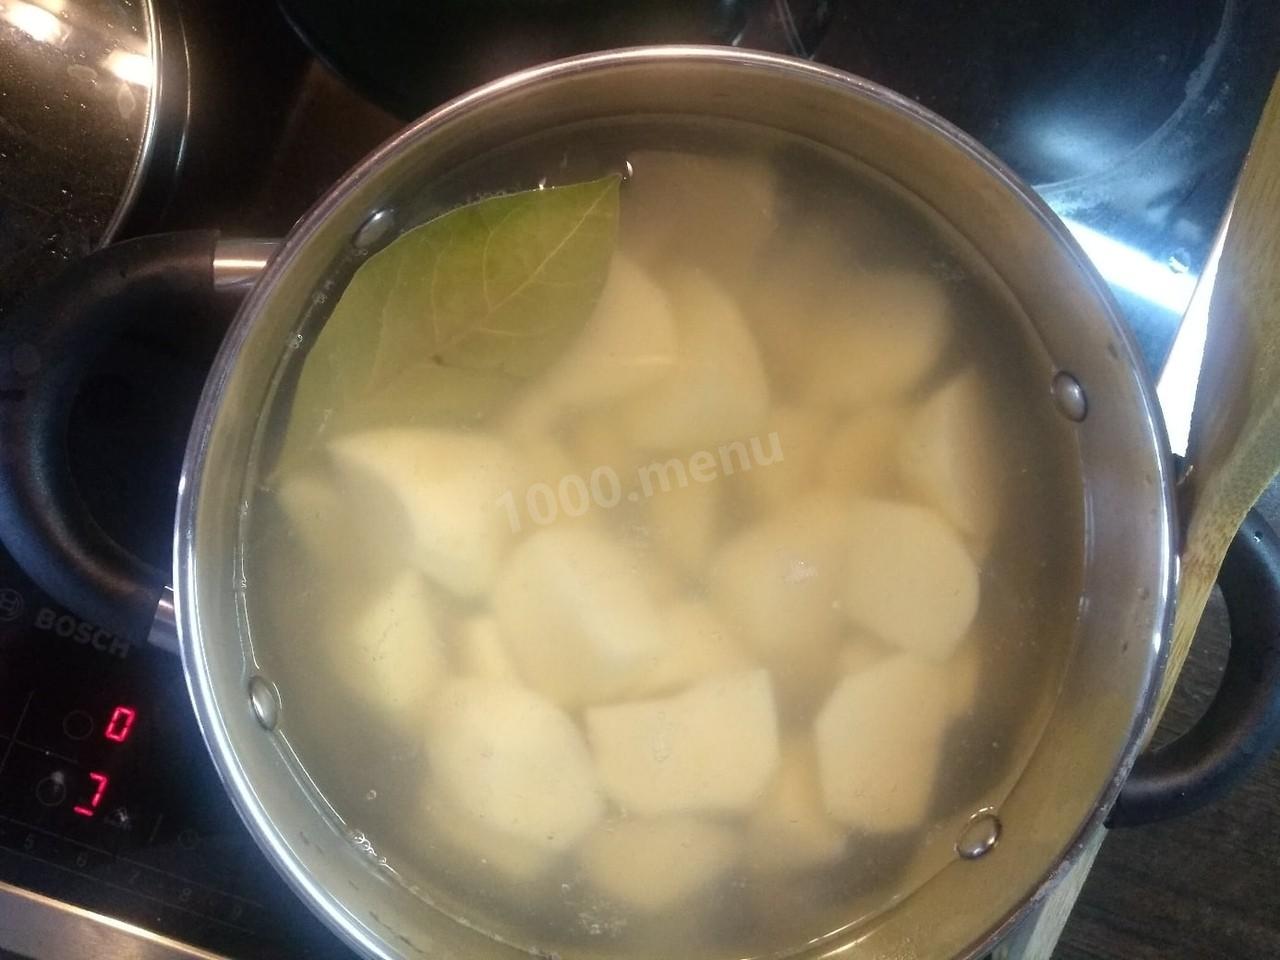 Лаврушку запекают в картошке. Как закипает вода с картошкой. Картофель бросить в кипящую воду. Горячая вода с картошкой как парить. Картошку кидают в кипящую воду